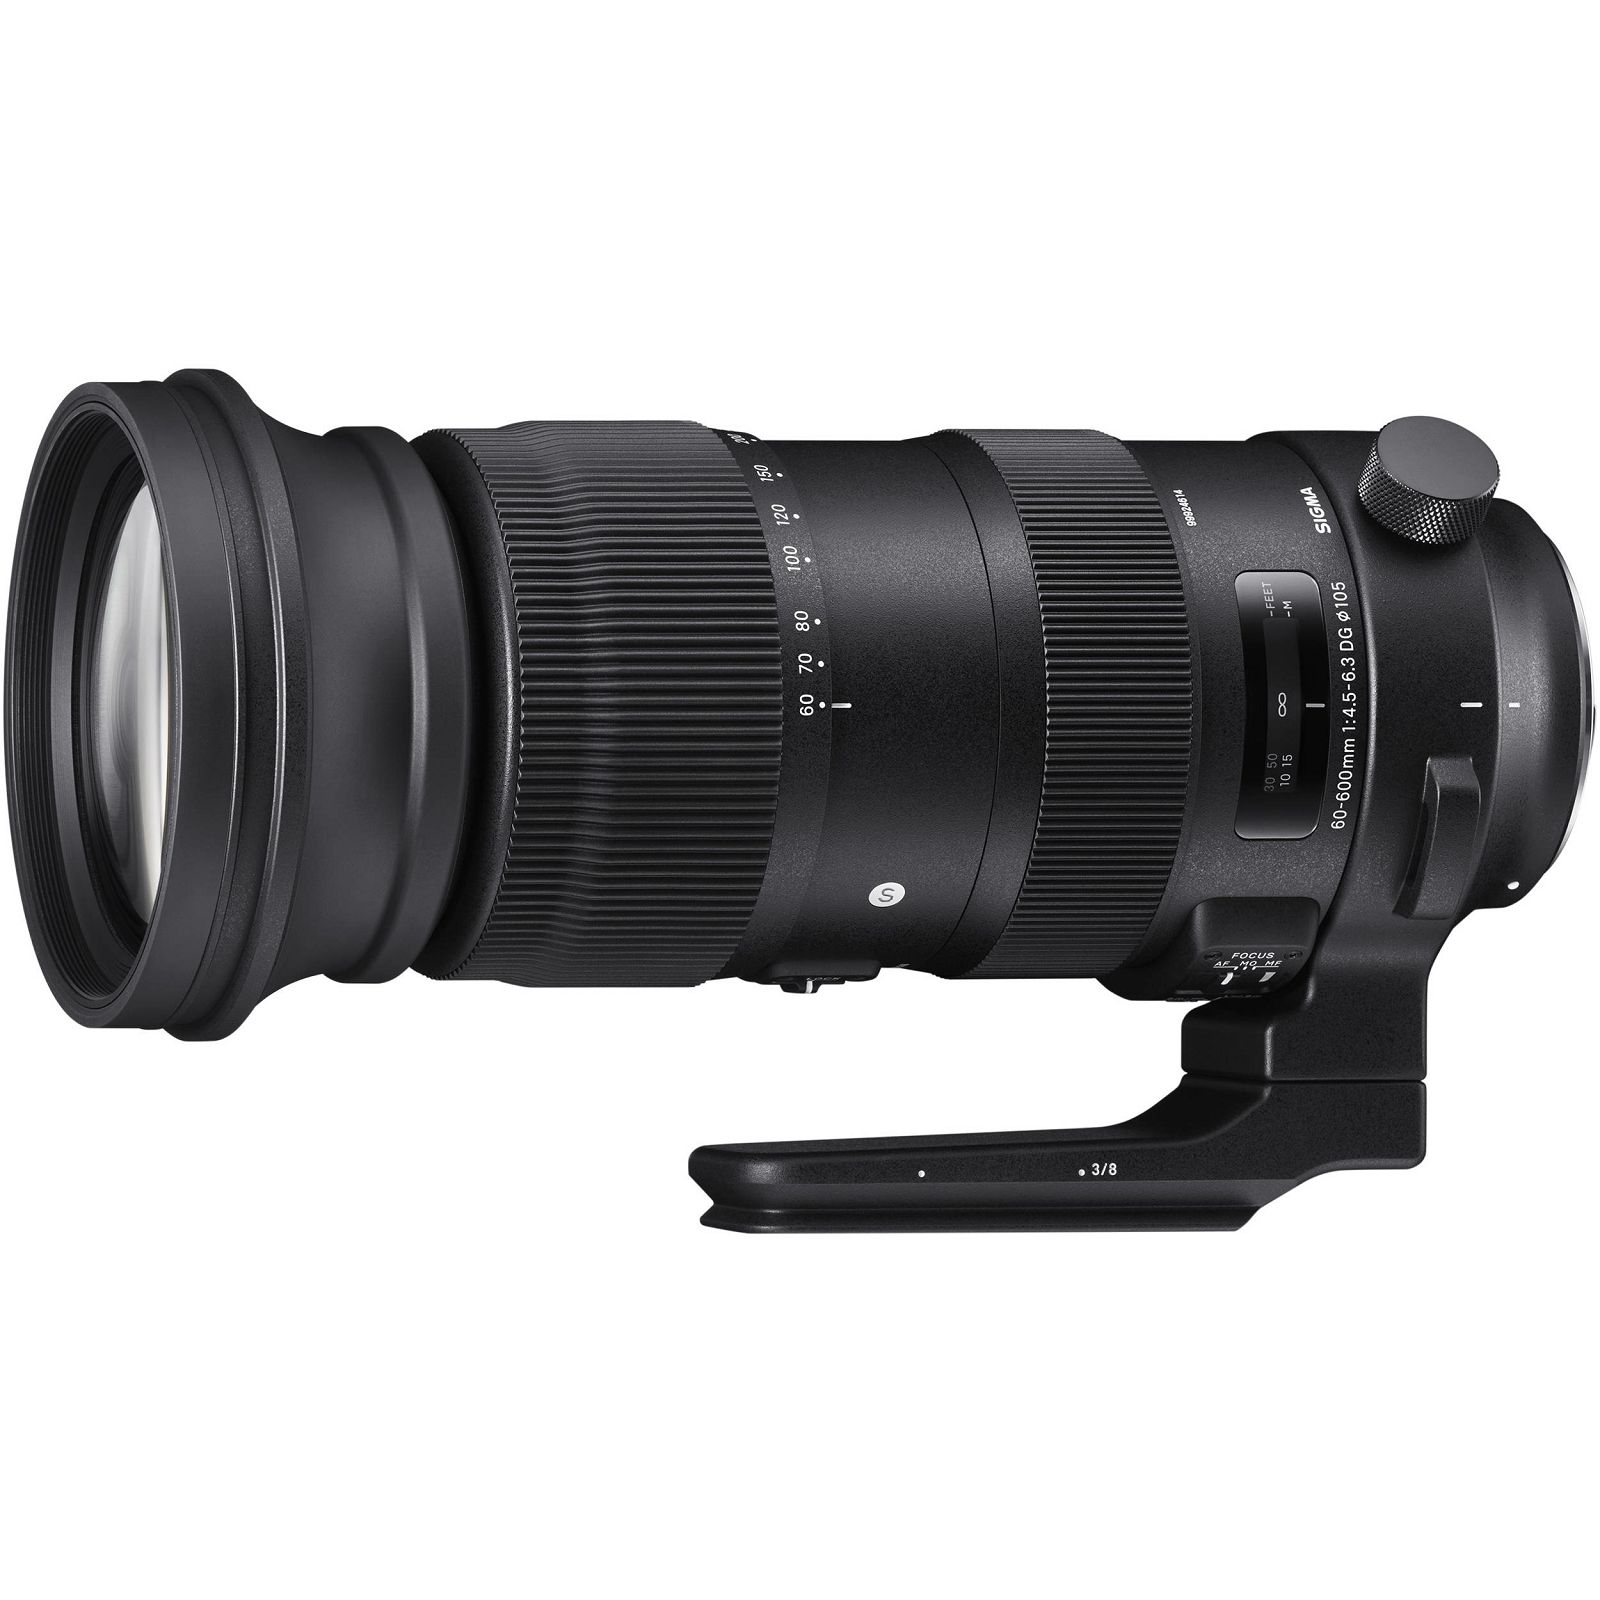 Sigma 60-600mm f/4.5-6.3 DG OS HSM Sport AF telefoto objektiv za Nikon FX (SI730-955)